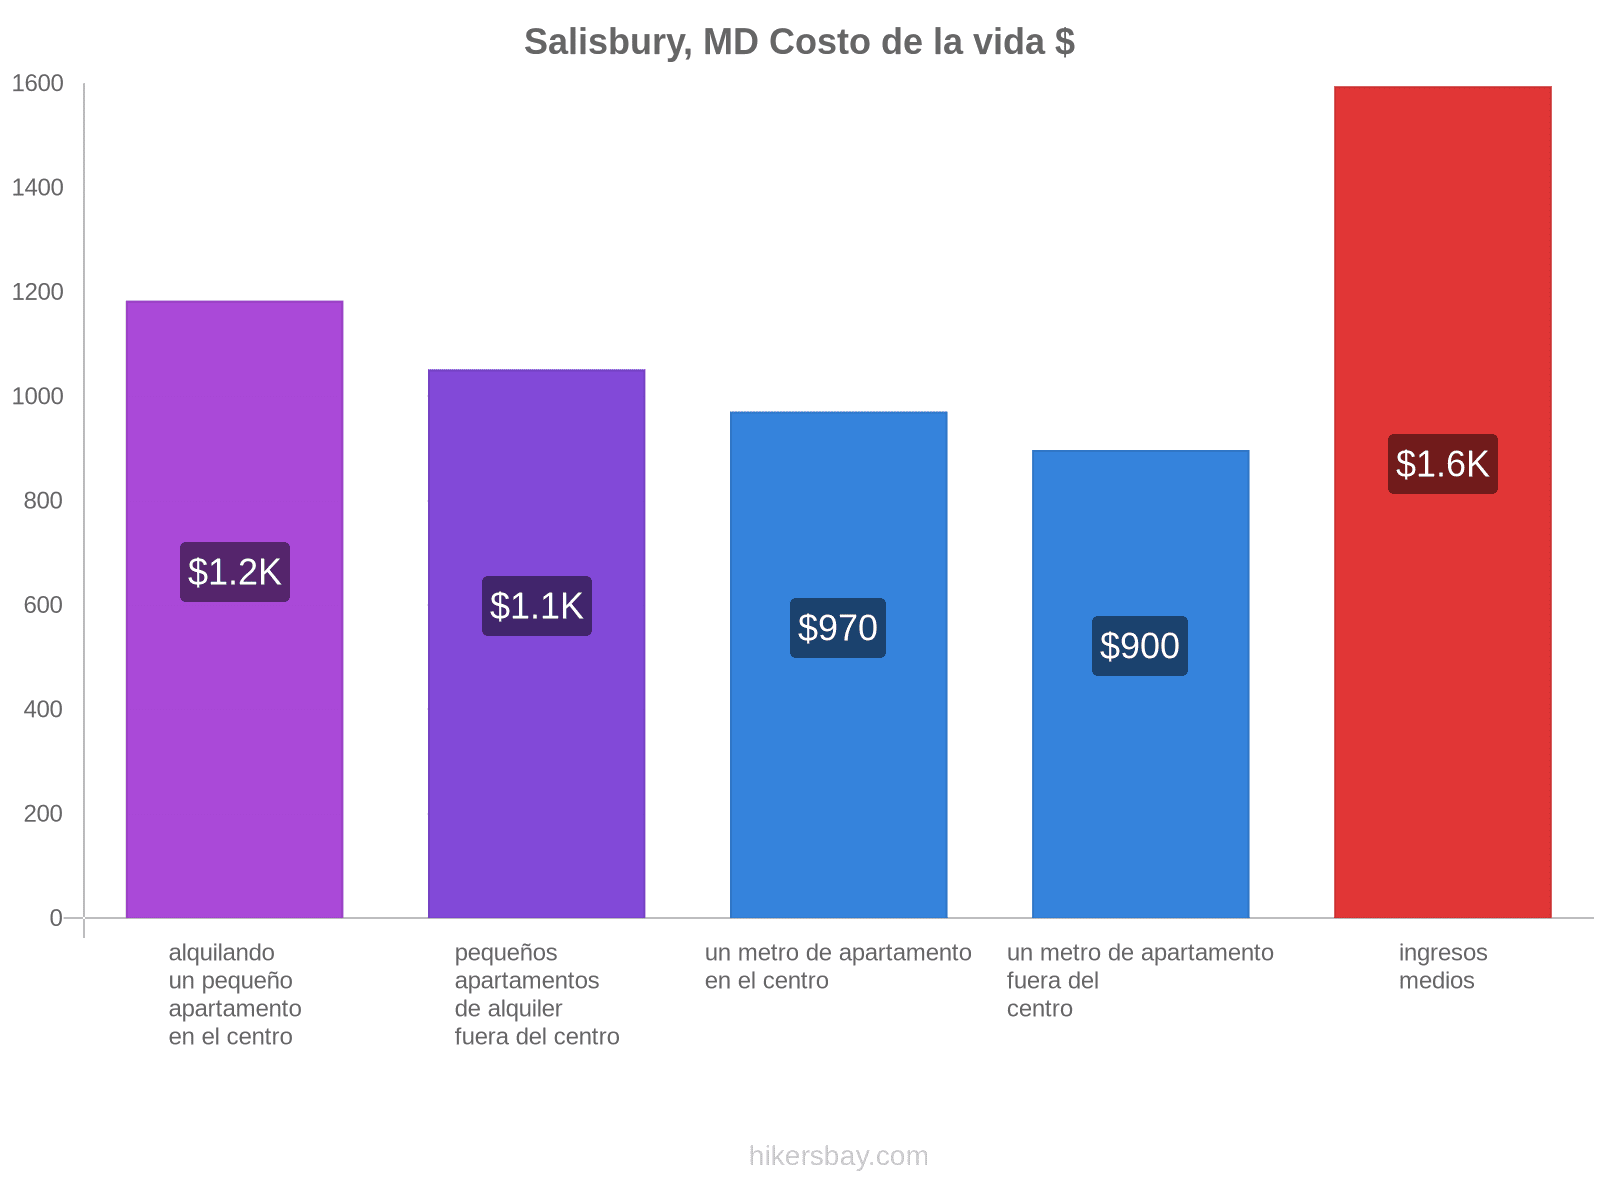 Salisbury, MD costo de la vida hikersbay.com